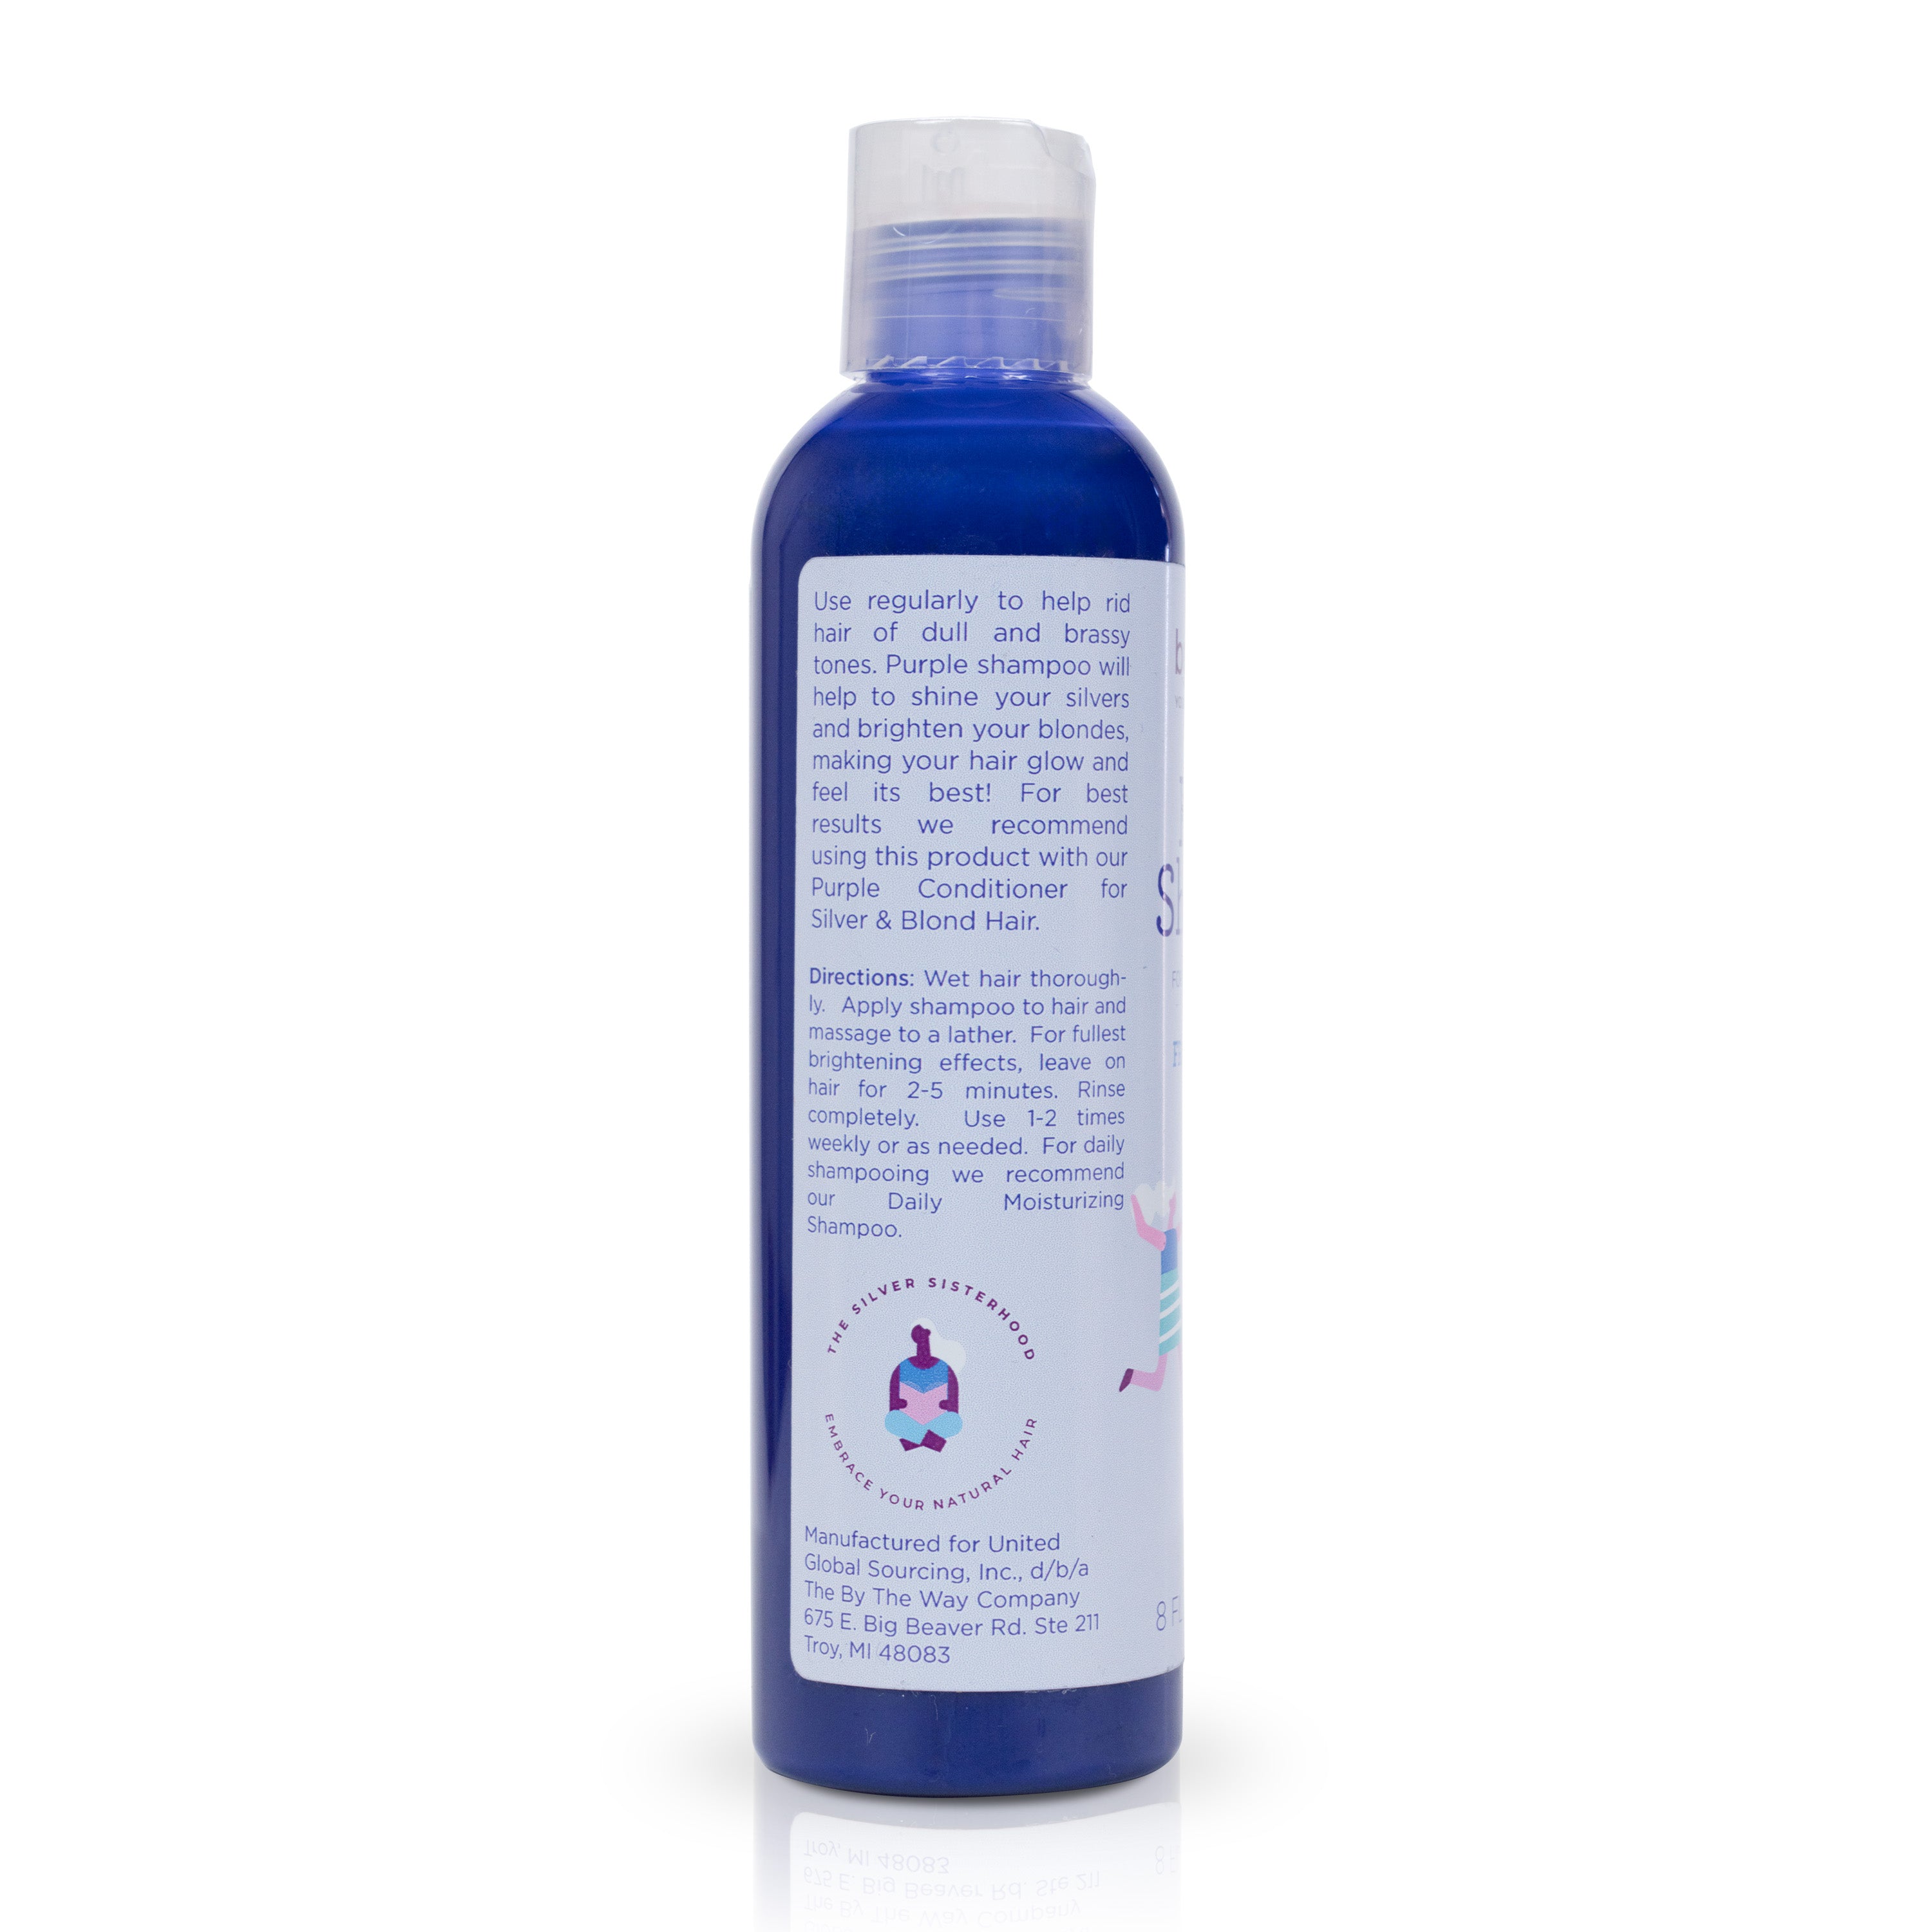 Purple Shampoo 8 Ounce Fragrance Free